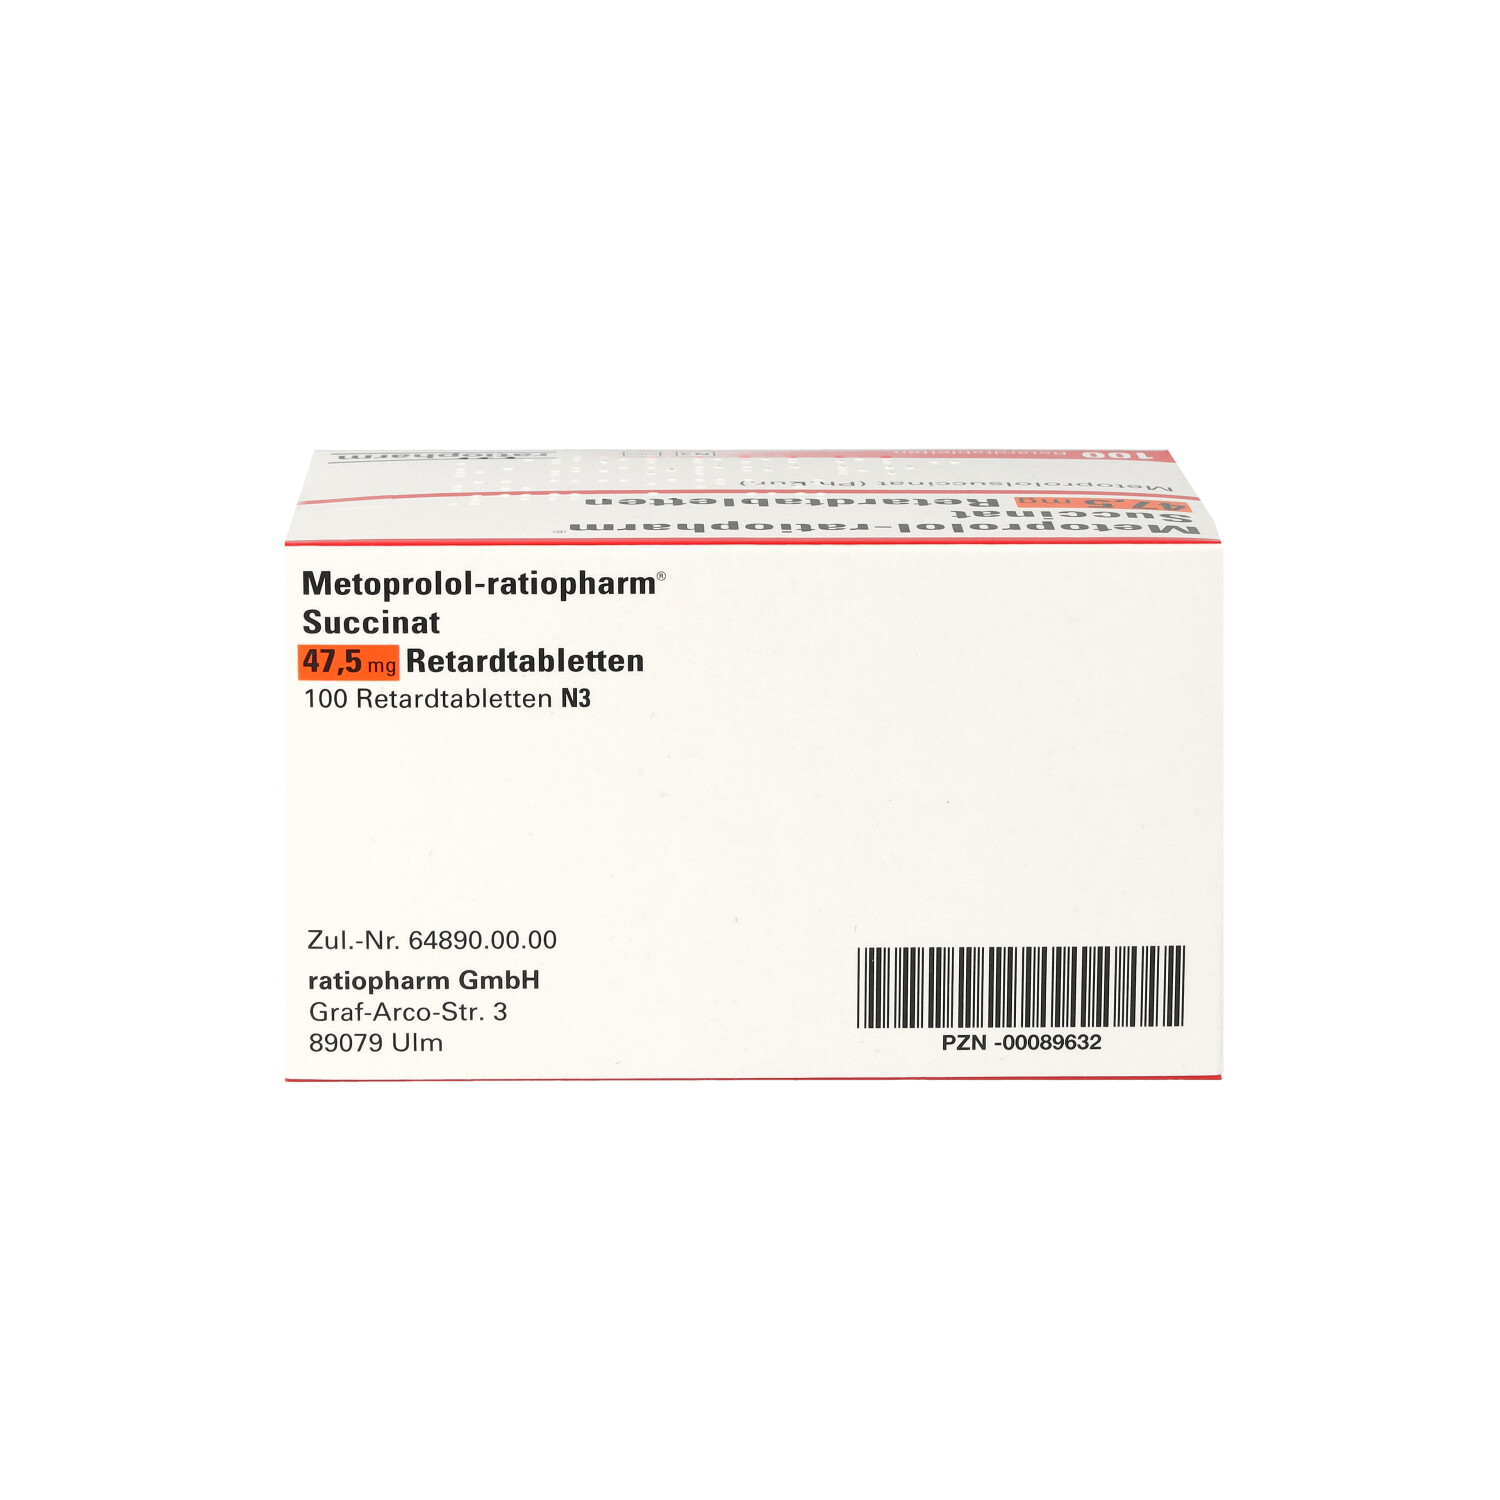 METOPROLOL-ratiopharm Succinat 47,5 mg Retardtabl.